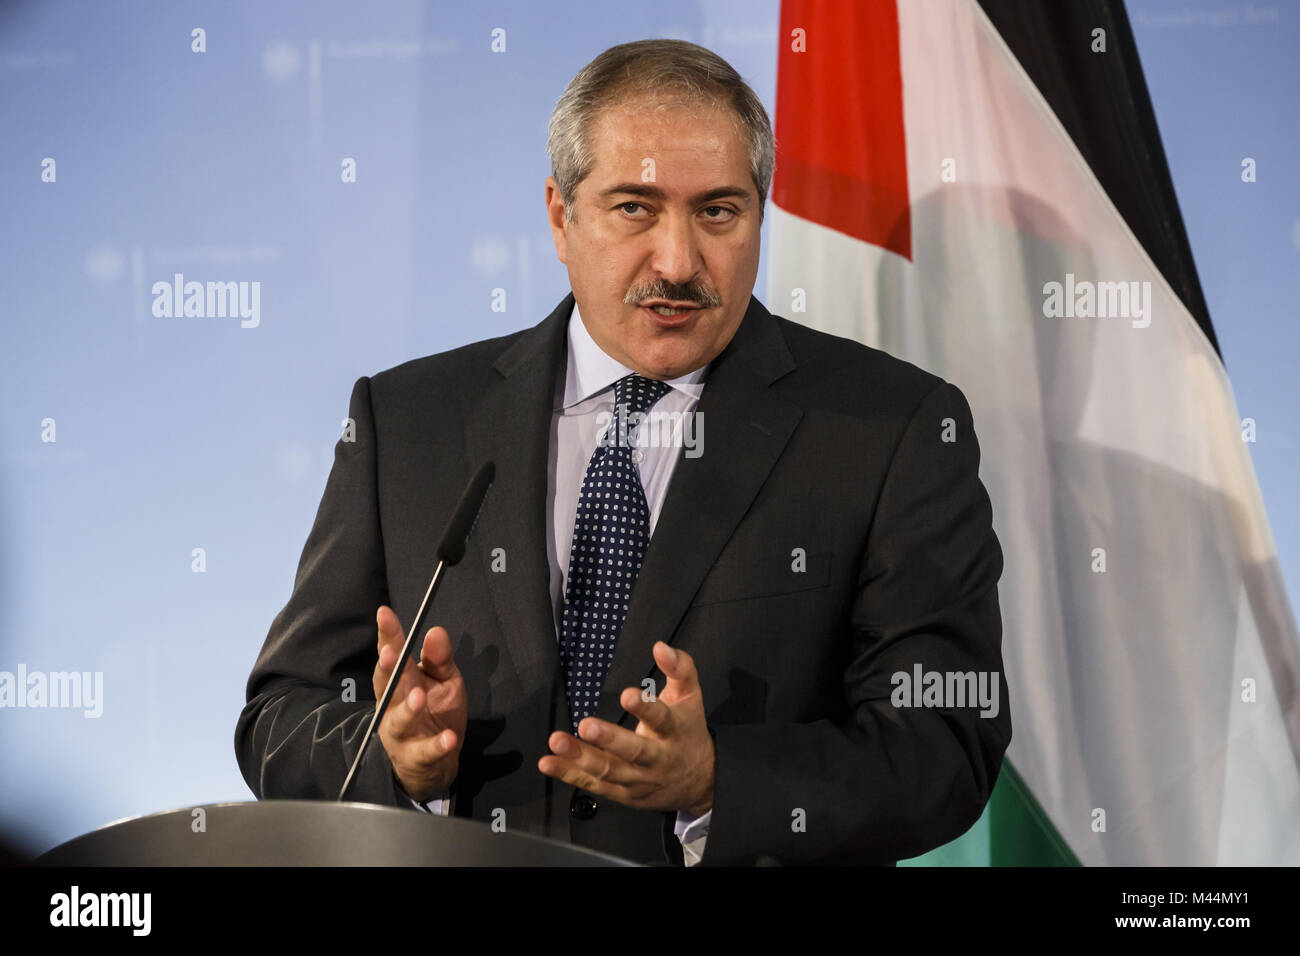 Außenminister Steinmeier empfängt die jordanischen Kollegen Stockfoto